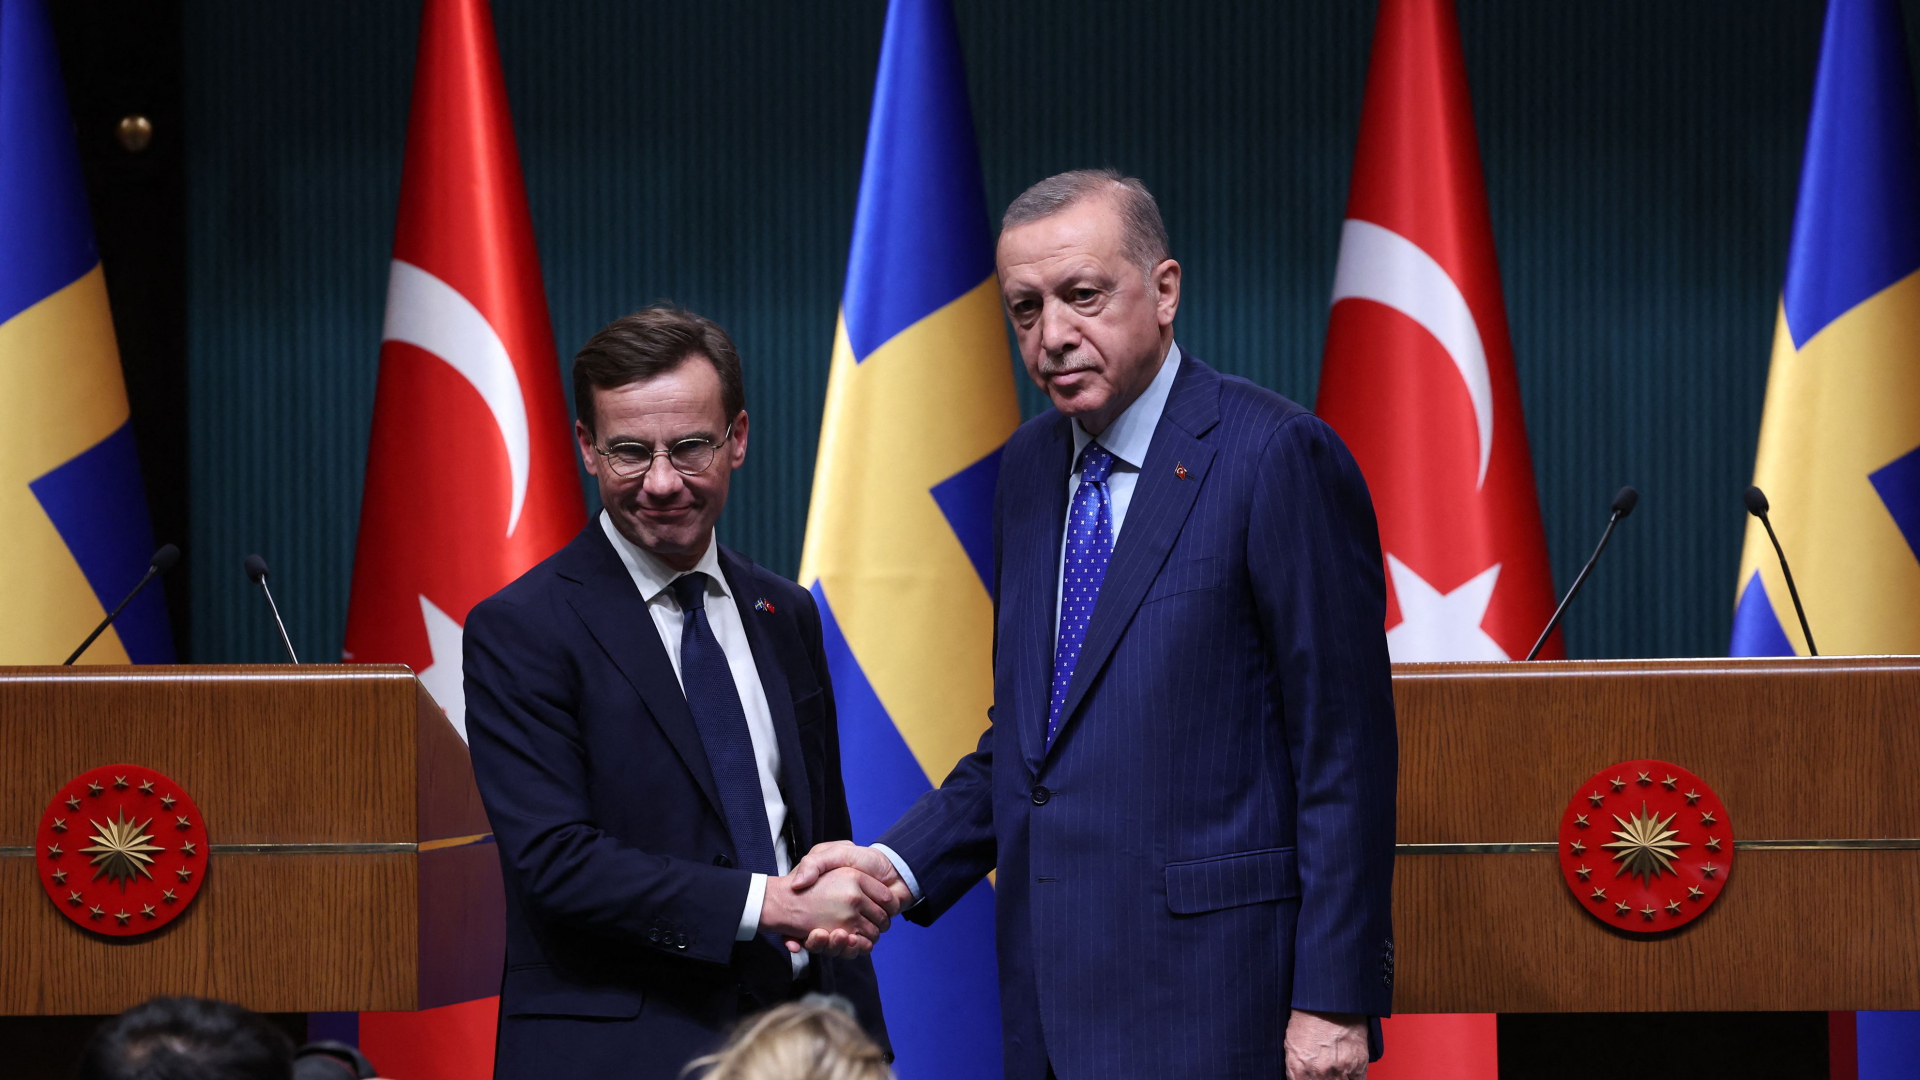 Der türkische Präsident Erdogan (r) und der schwedische Premierminister Kristersson am 8.11.22 in Ankara. | AFP